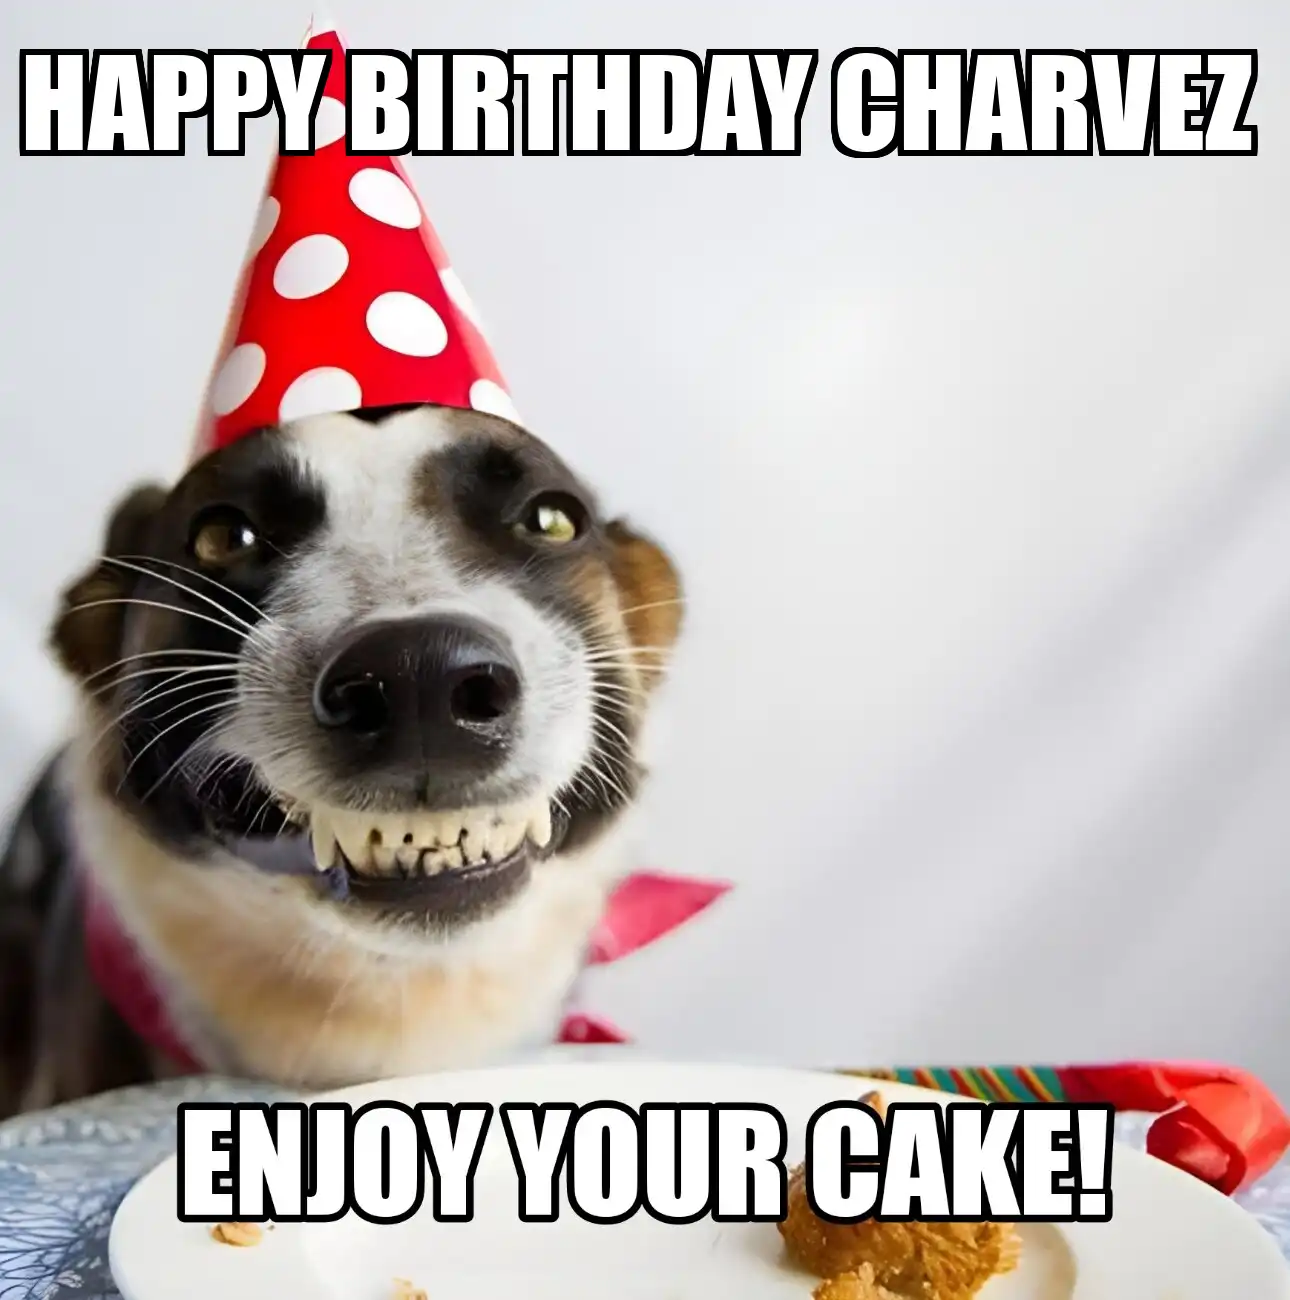 Happy Birthday Charvez Enjoy Your Cake Dog Meme